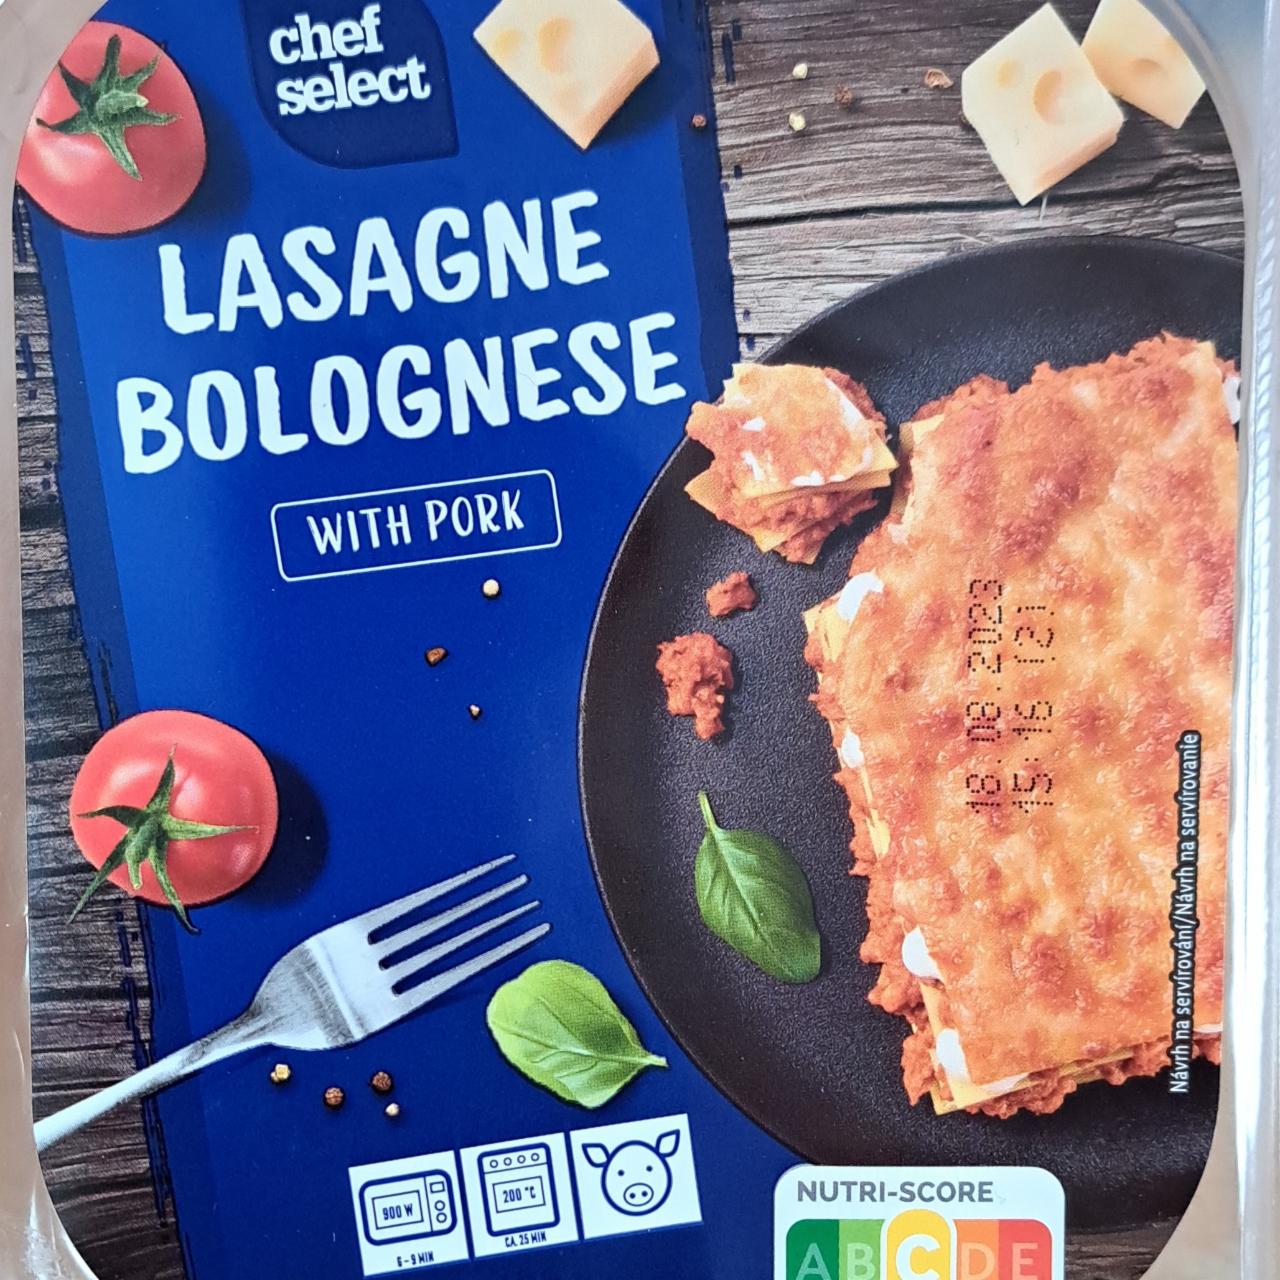 Lasagne Bolognese with Chef Select a pork nutriční kalorie, hodnoty - kJ